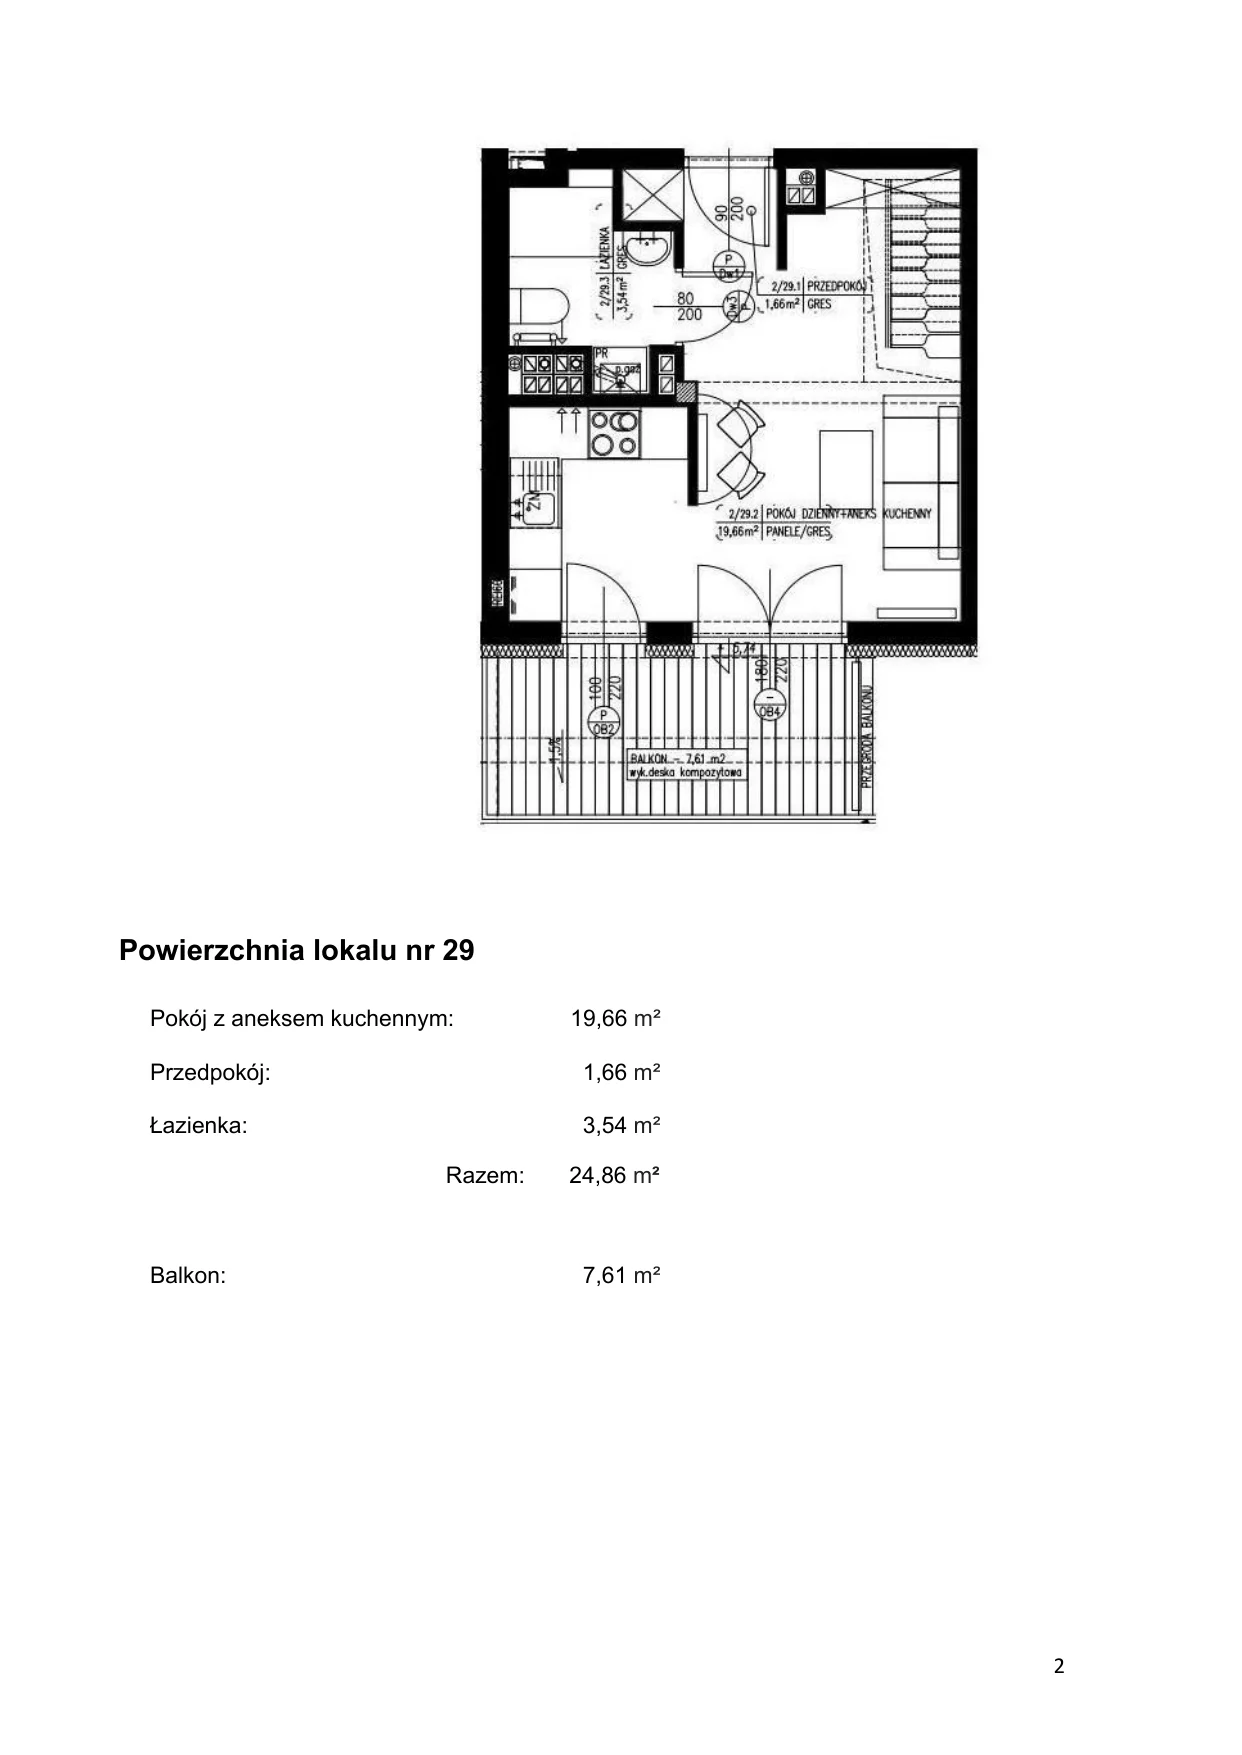 Apartament 37,82 m², piętro 2, oferta nr 29, Klimaty Bałtyku, Dziwnów, ul. Daglezji 93-94